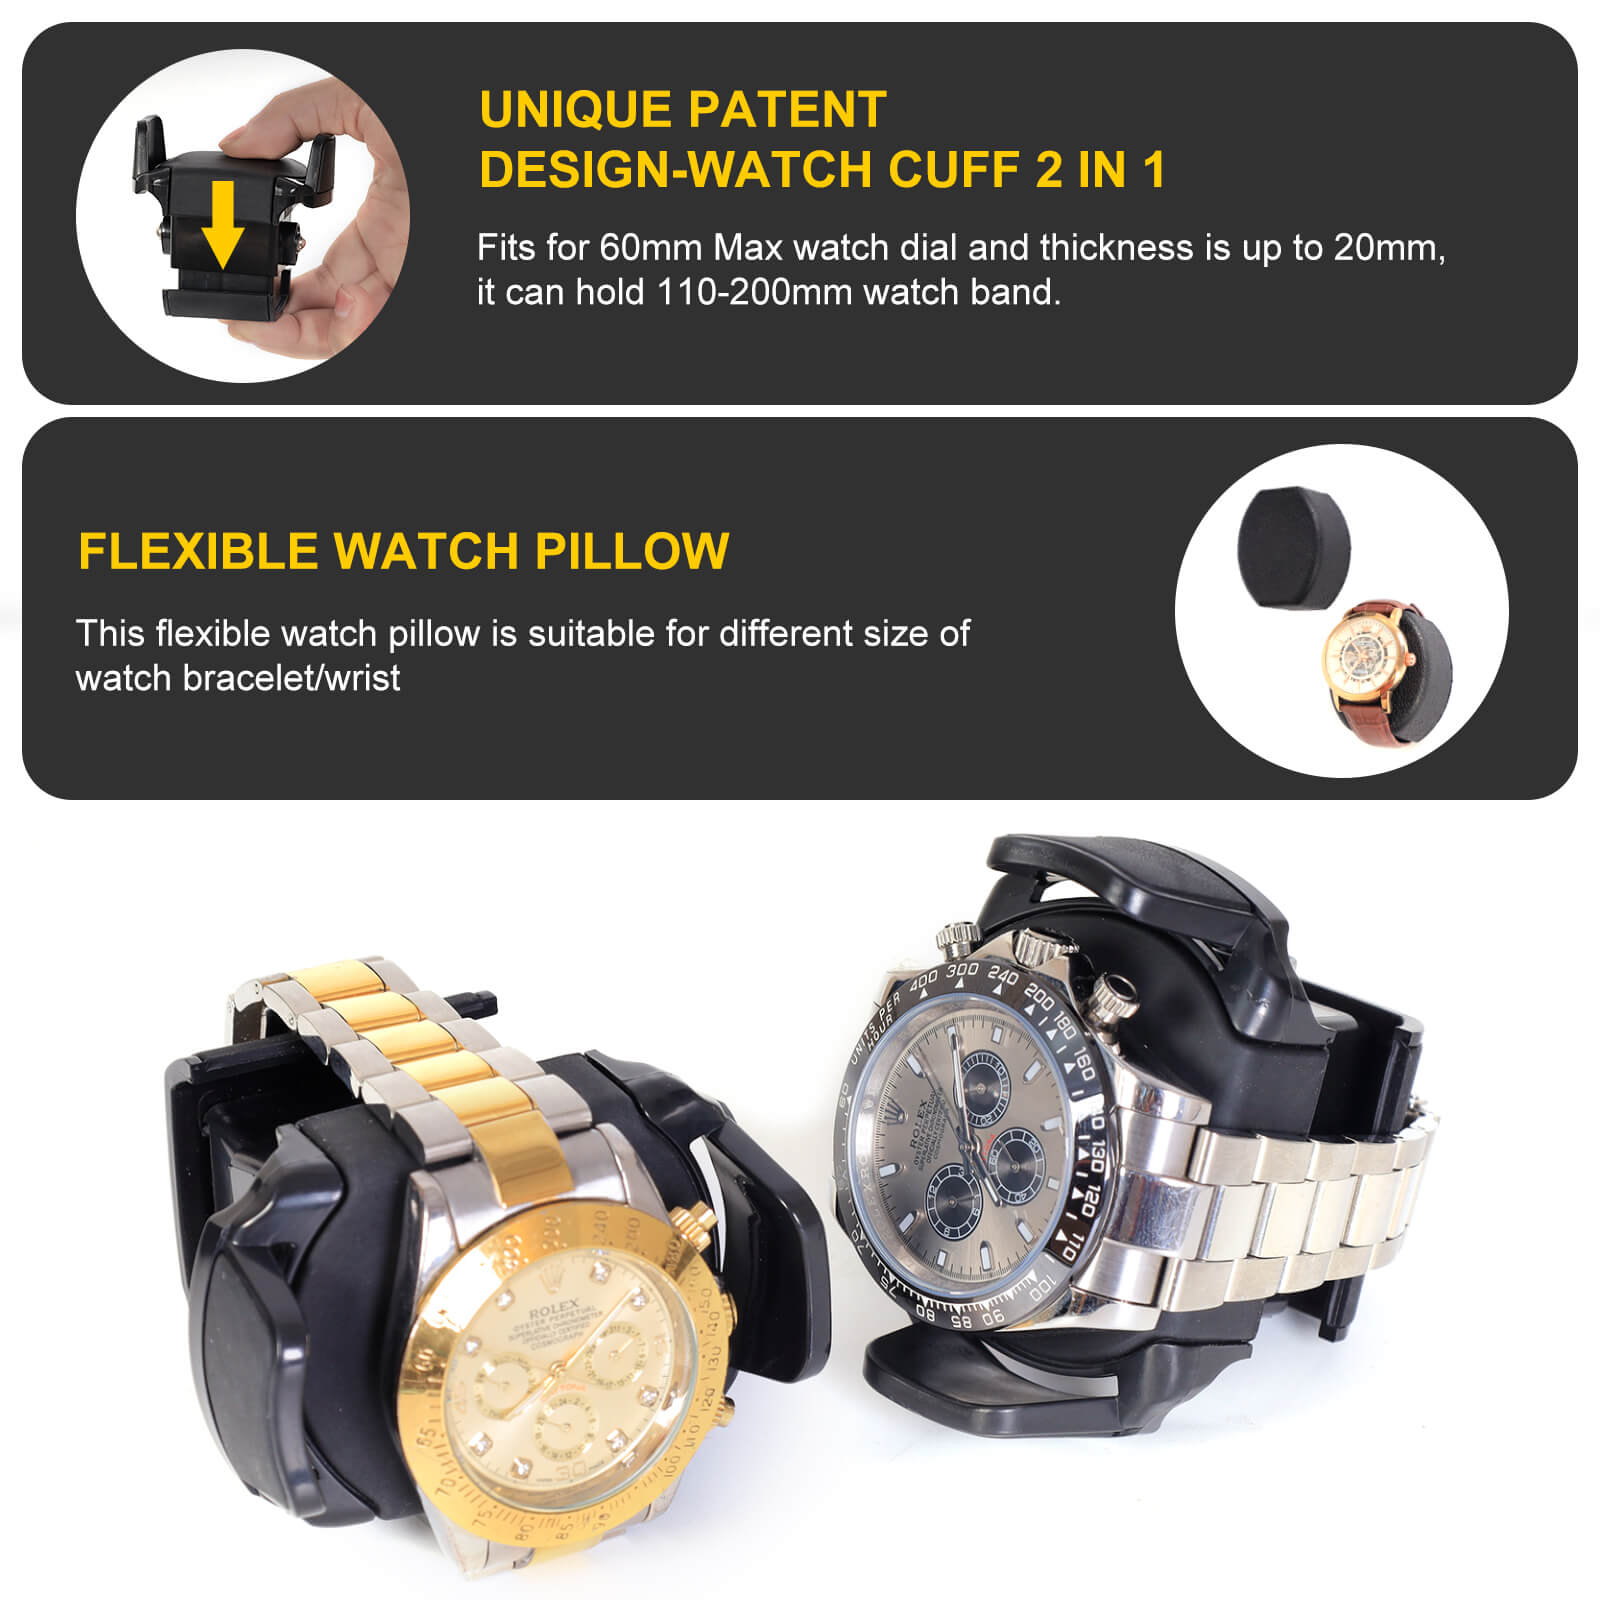 Remontoirs de montres compacts pour 6 montres avec espace de rangement pour organisateur de 5 montres Moteur Mabuchi silencieux - Noir